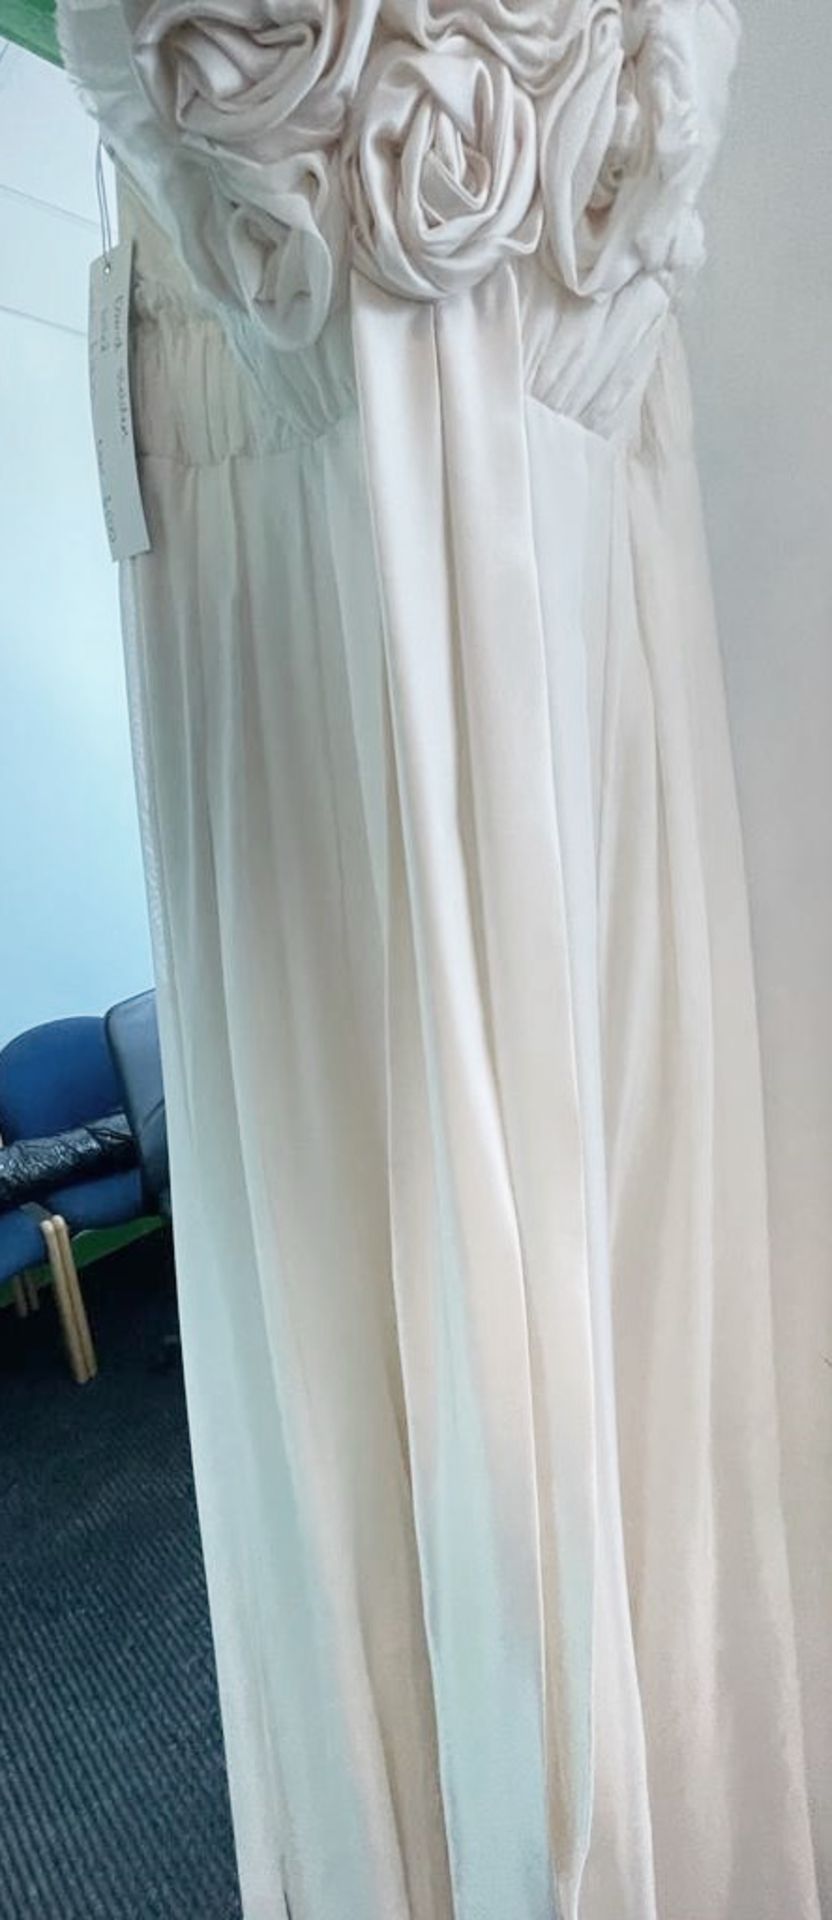 1 x DAVID FIELDEN Designer Silk Strapless Grecian-style Column Wedding Dress Bridal Gown, With - Image 8 of 8